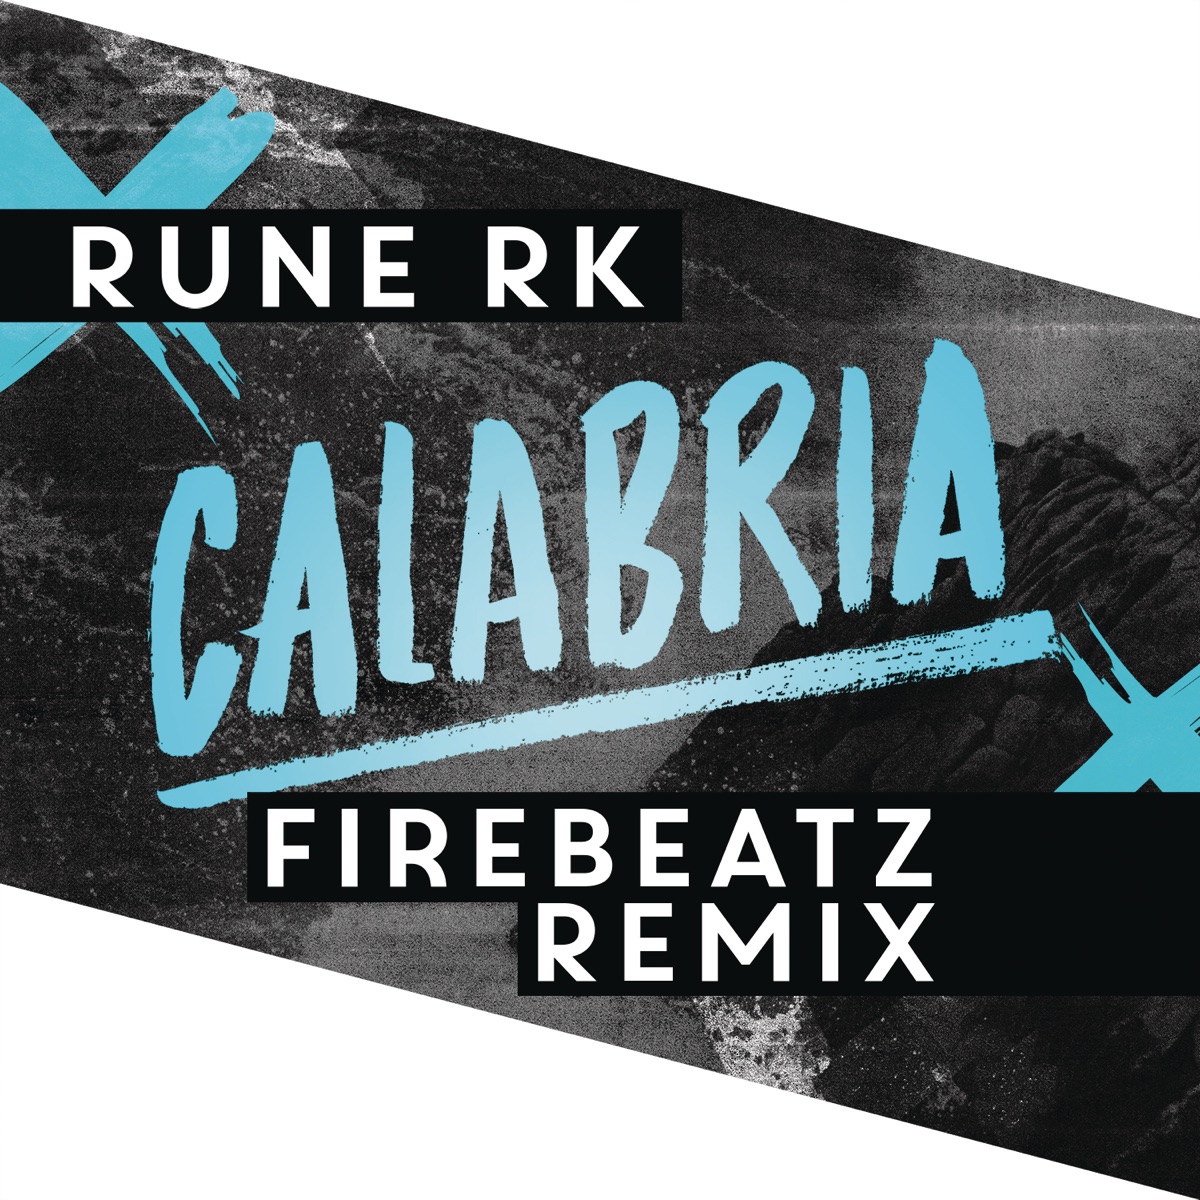 Rune RK & Firebeatz Calabria (Firebeatz Remix) cover artwork